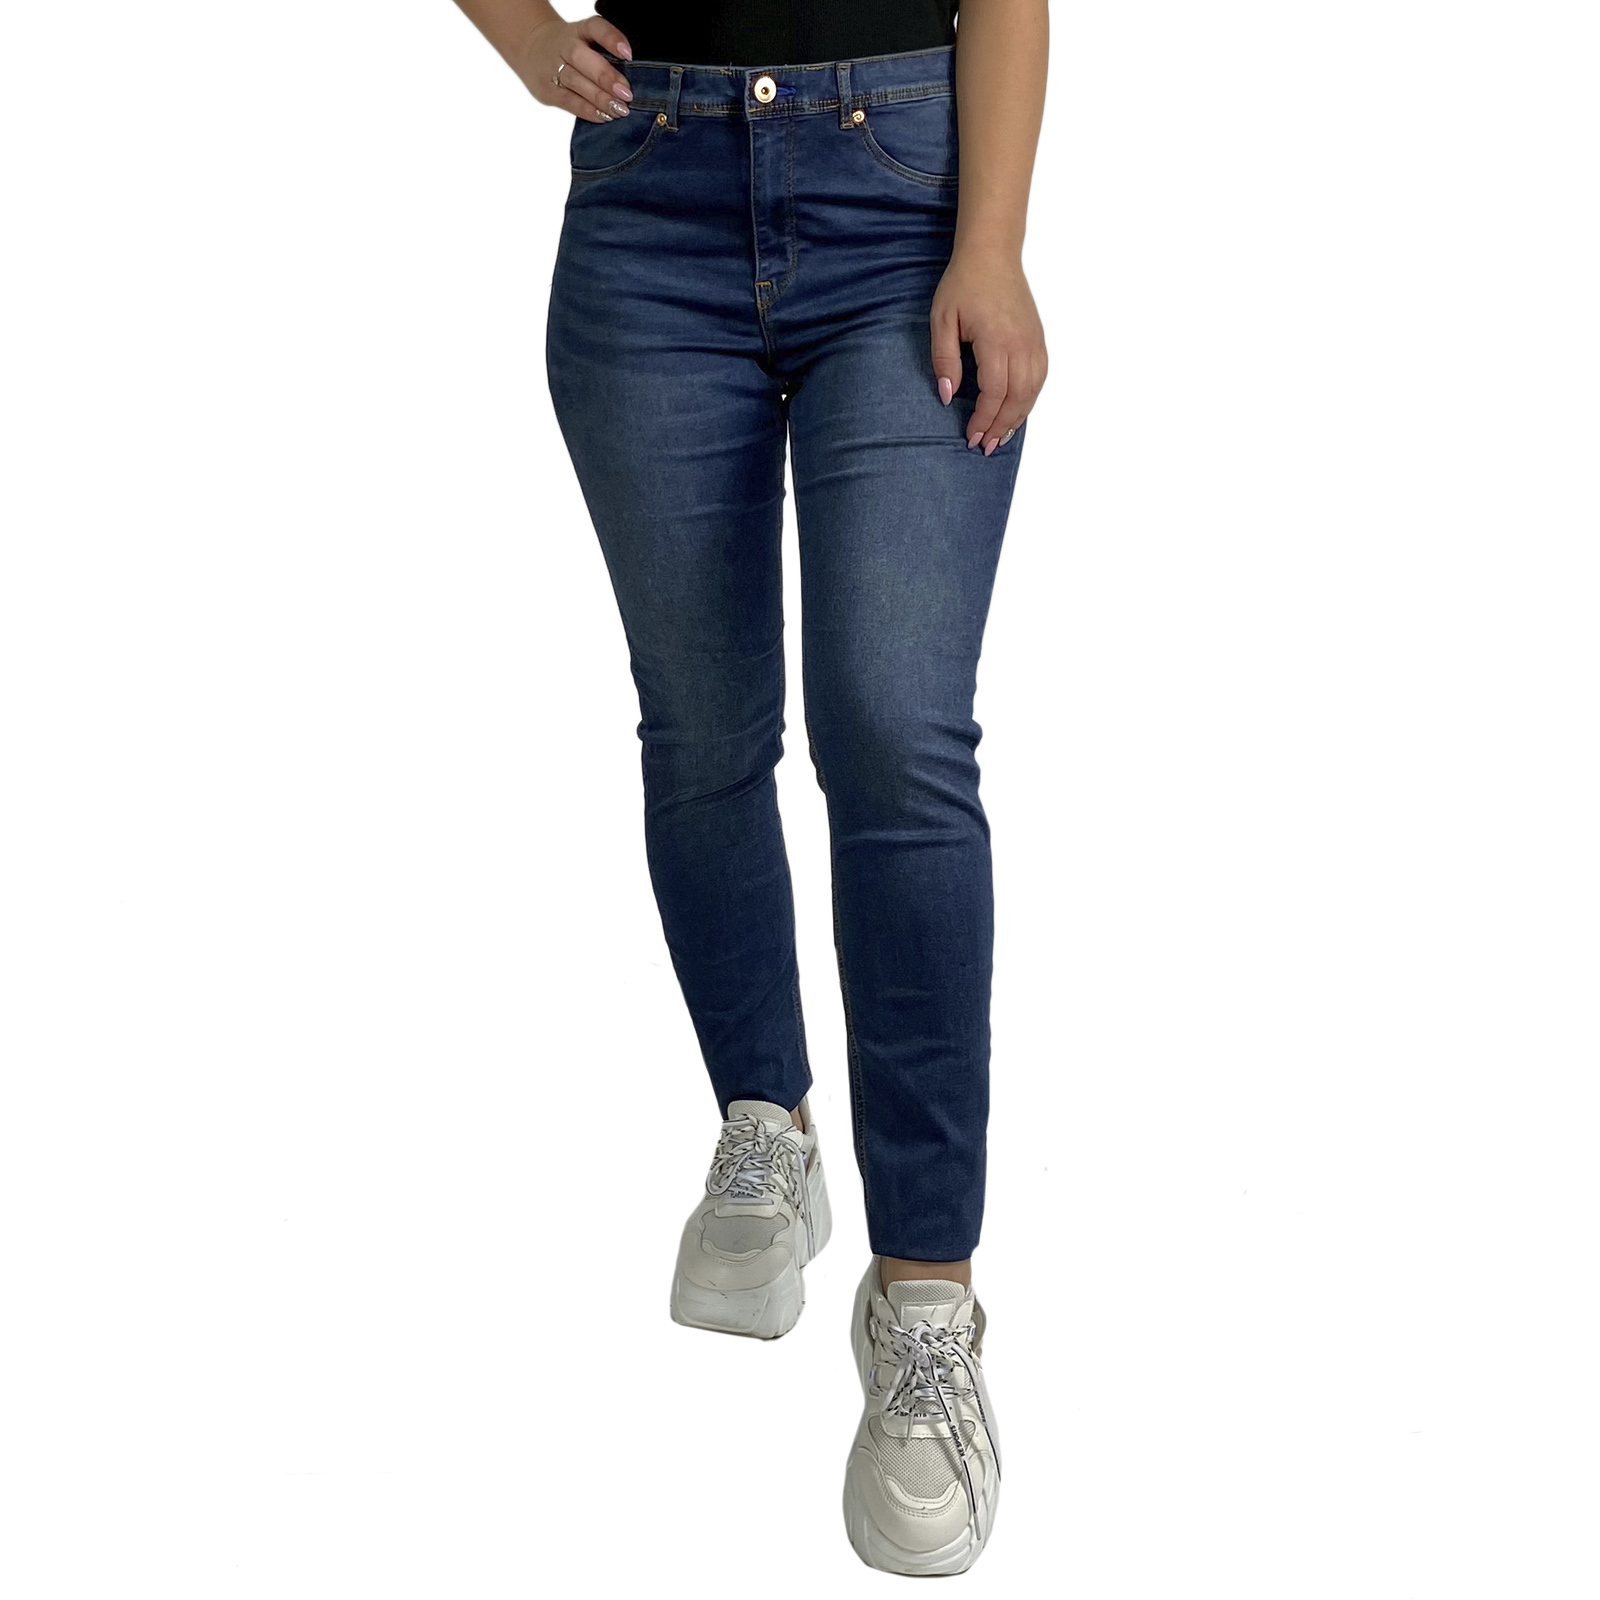 Купить фирменные женские джинсы H&M Feather Soft